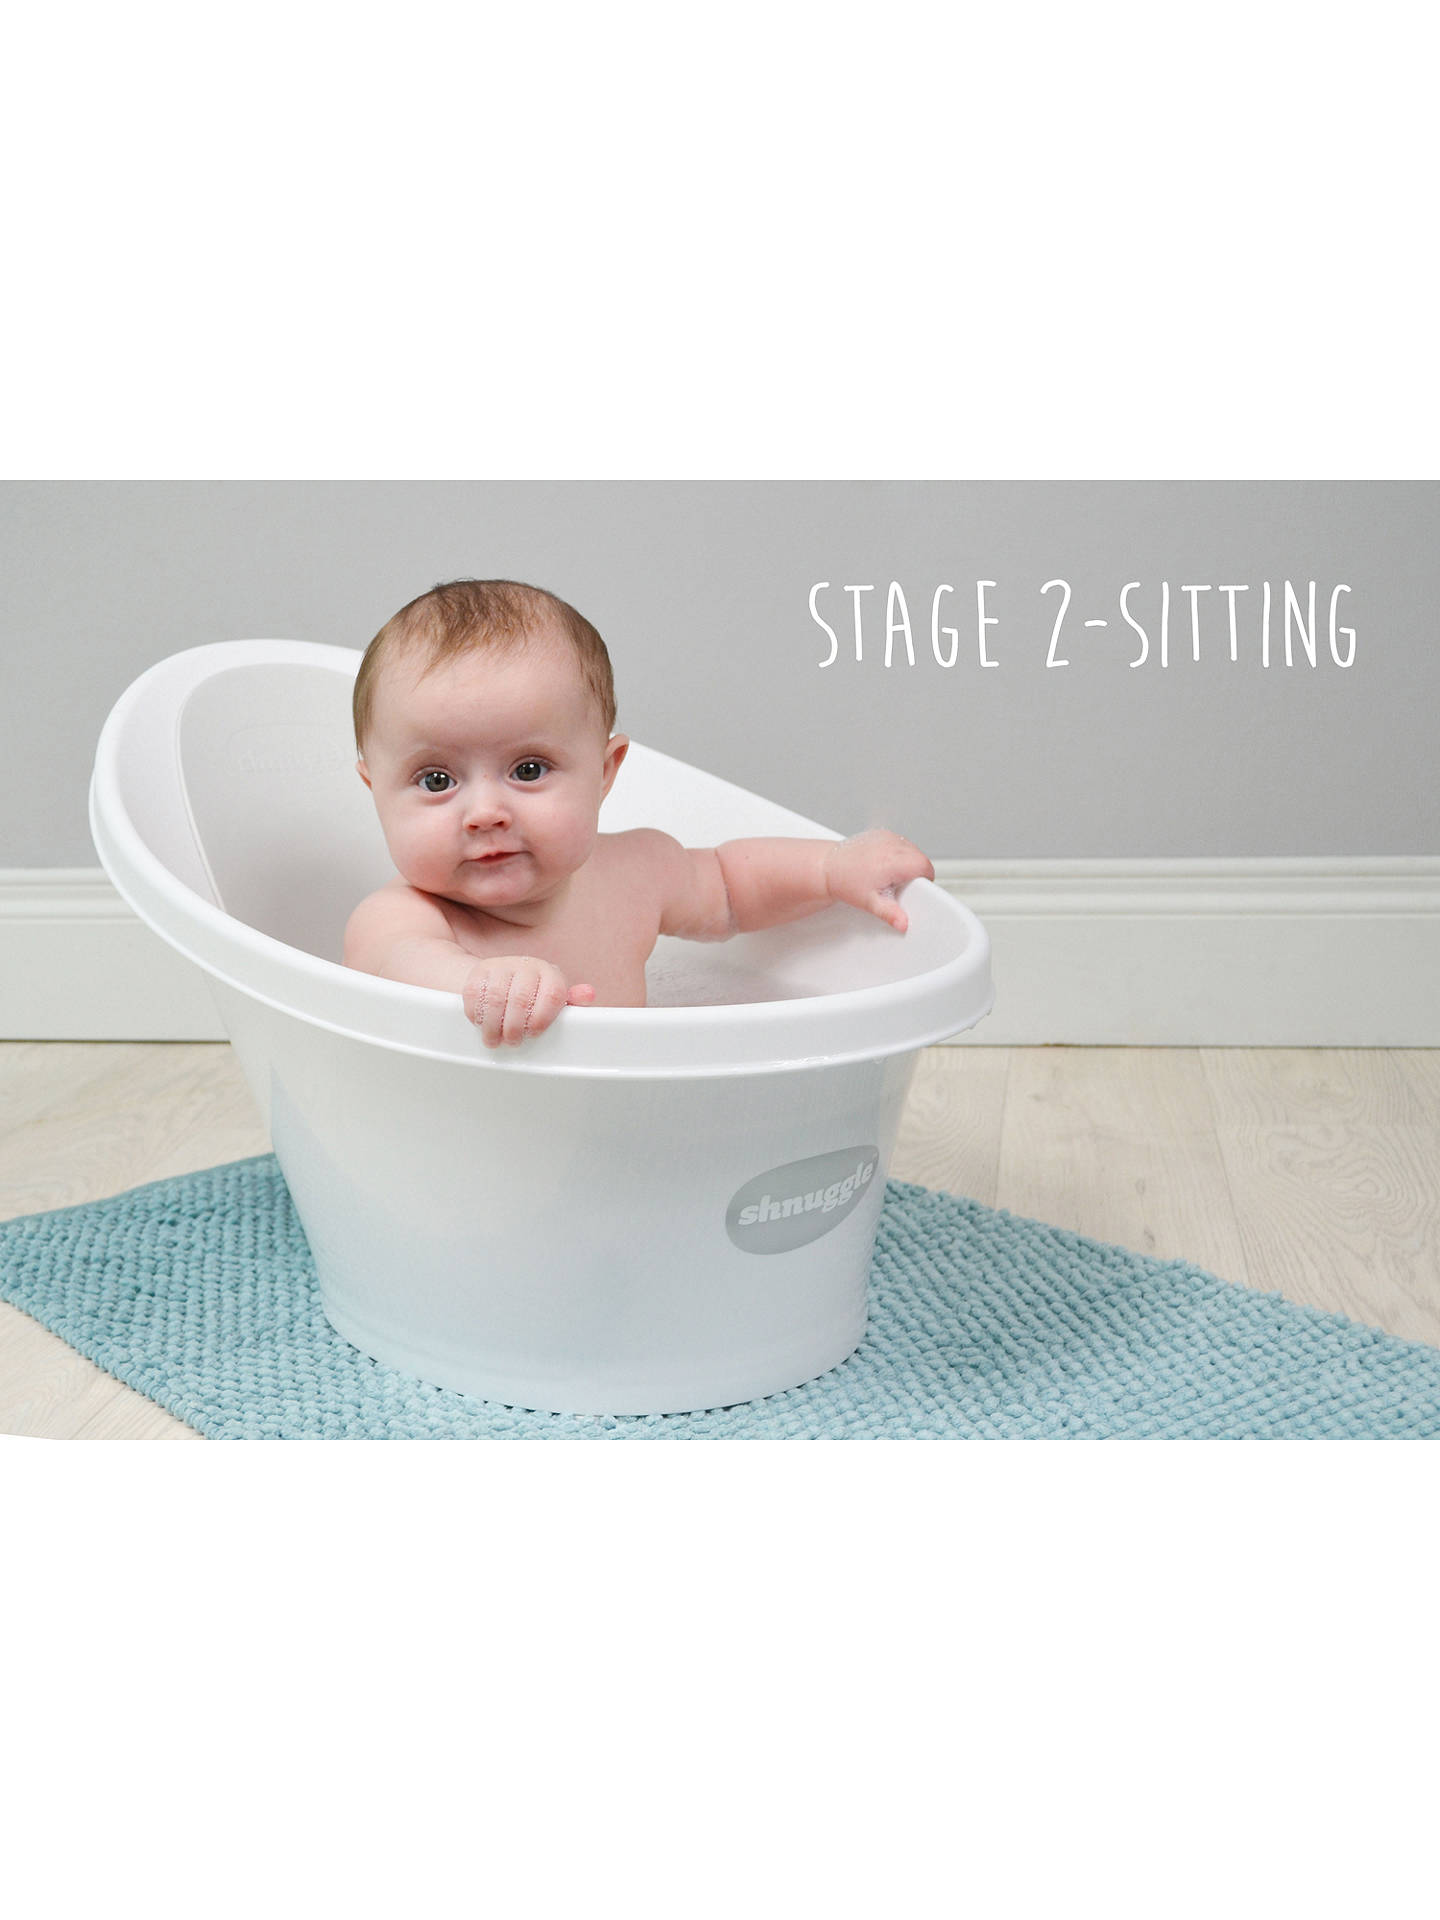 BABY BATH TUB INFANT TODDLERS FOLDABLE BATHTUB FOLDING 